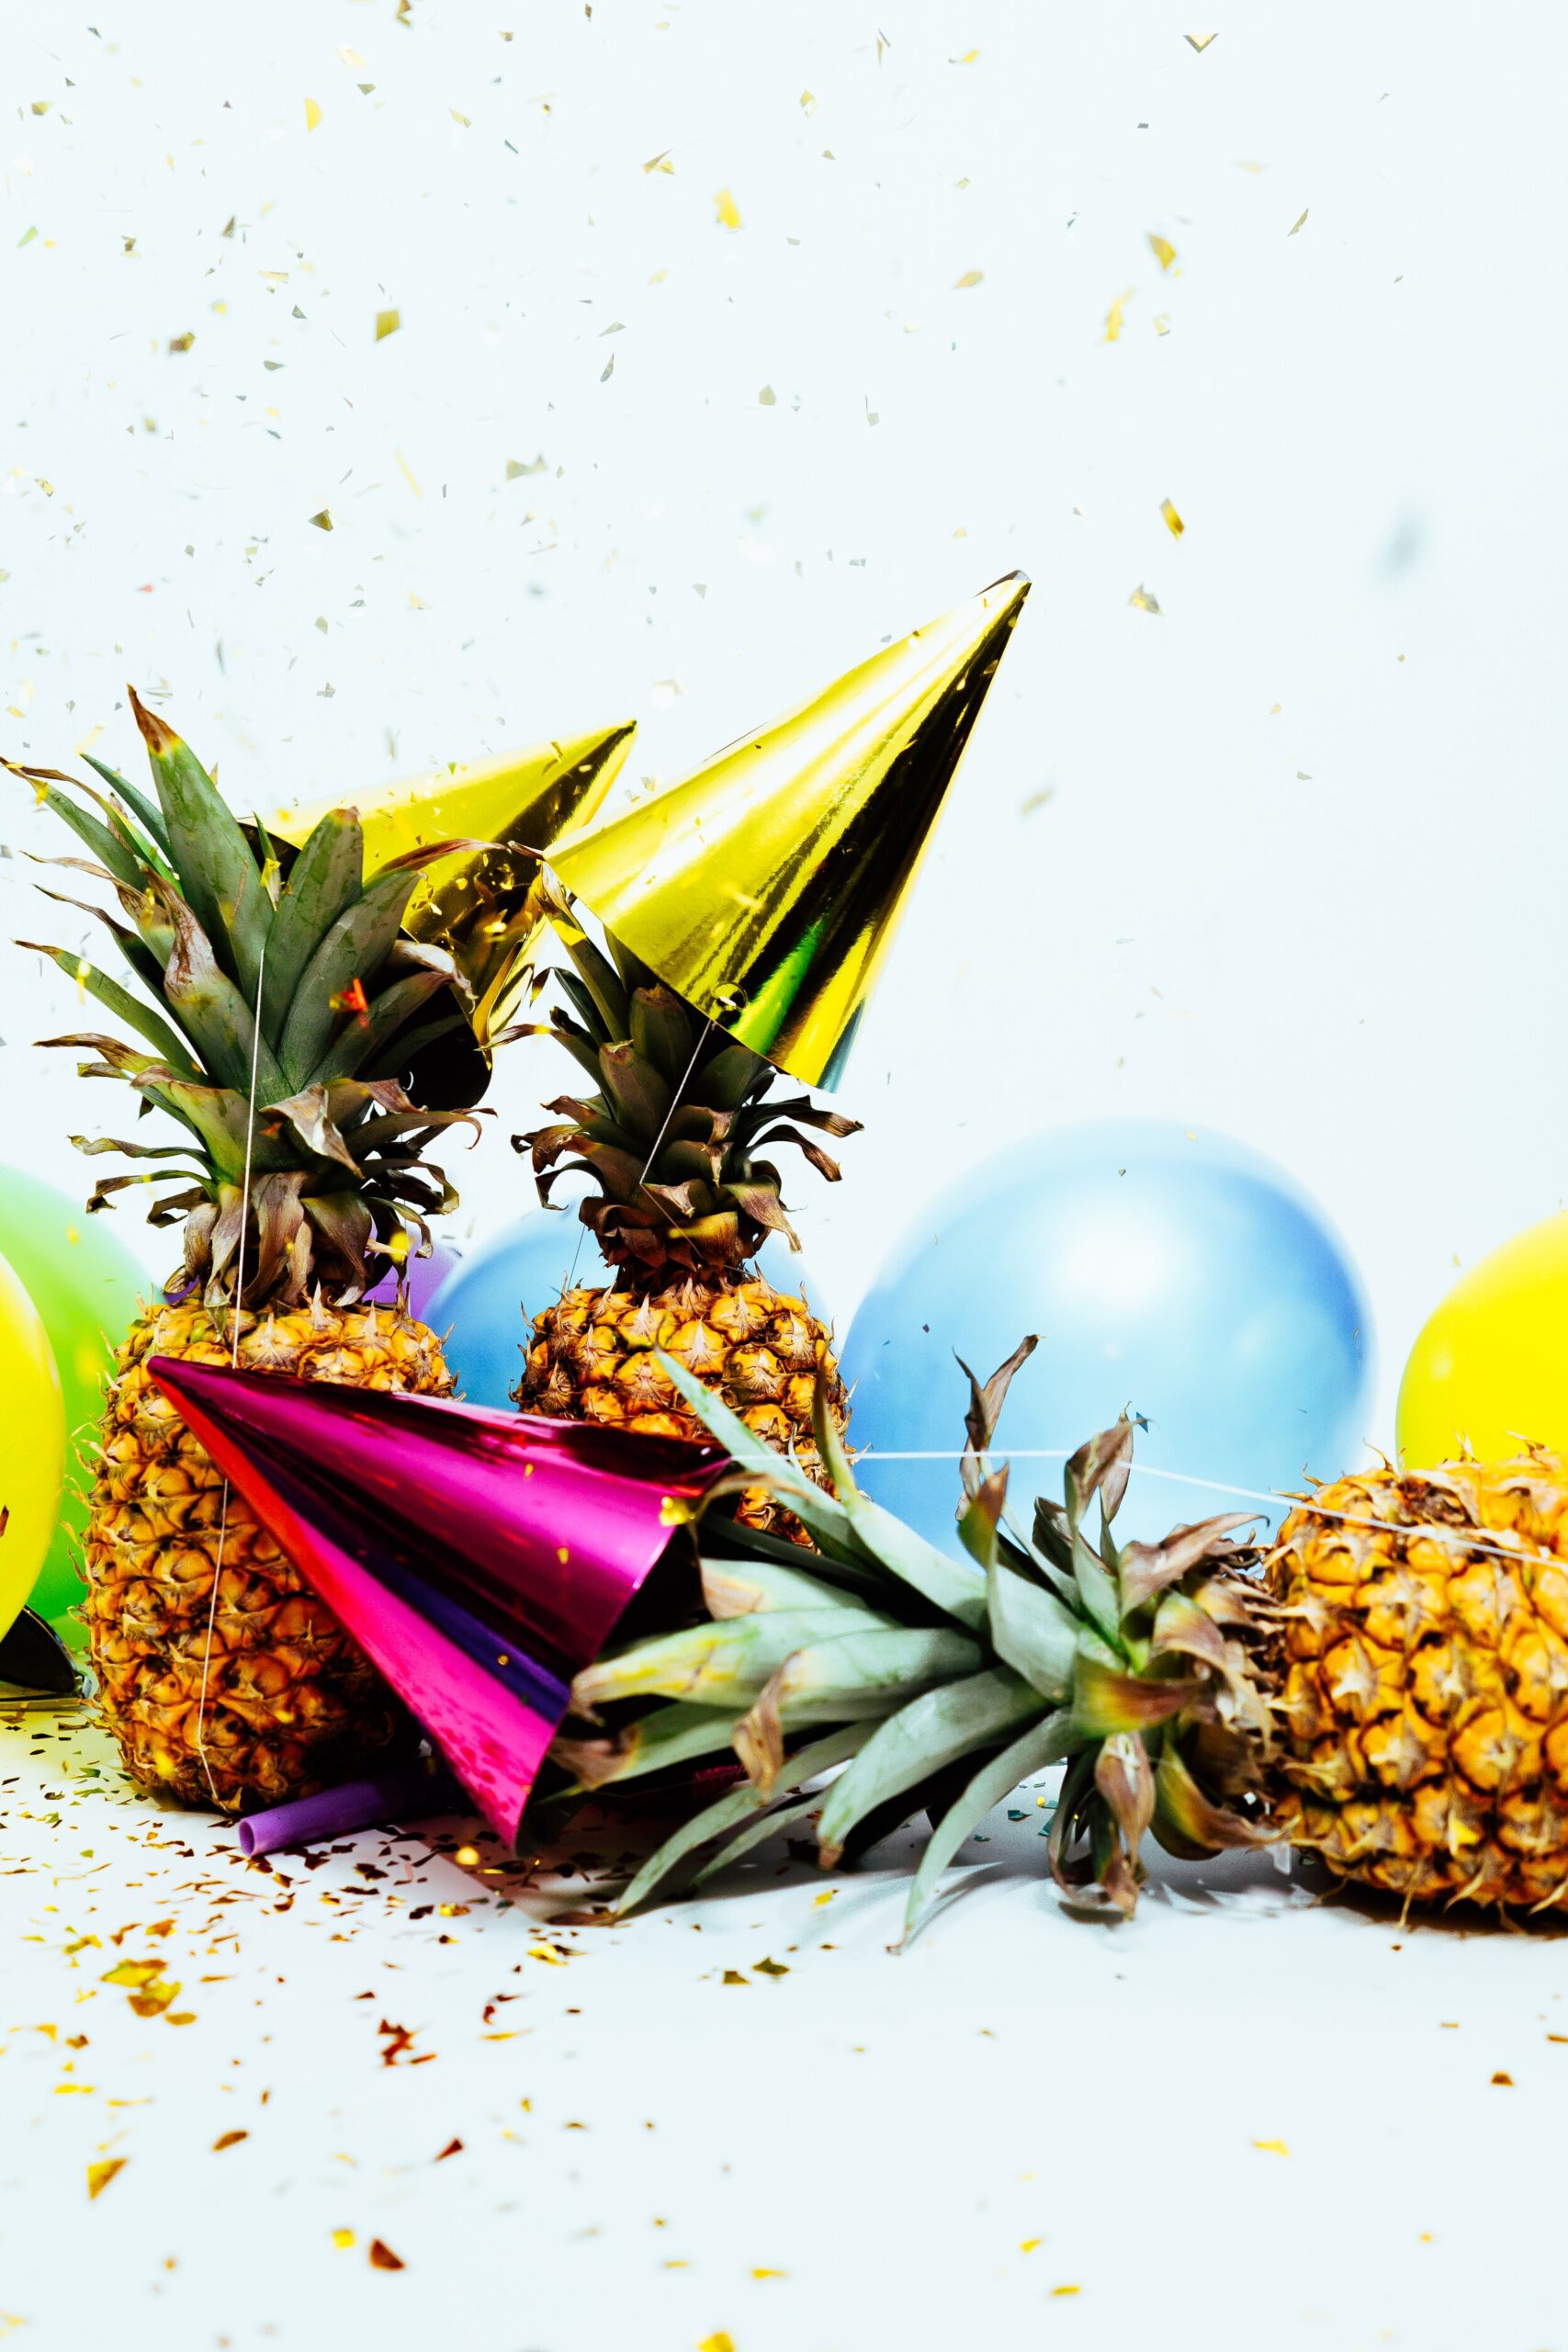 pineapple new year.jpg